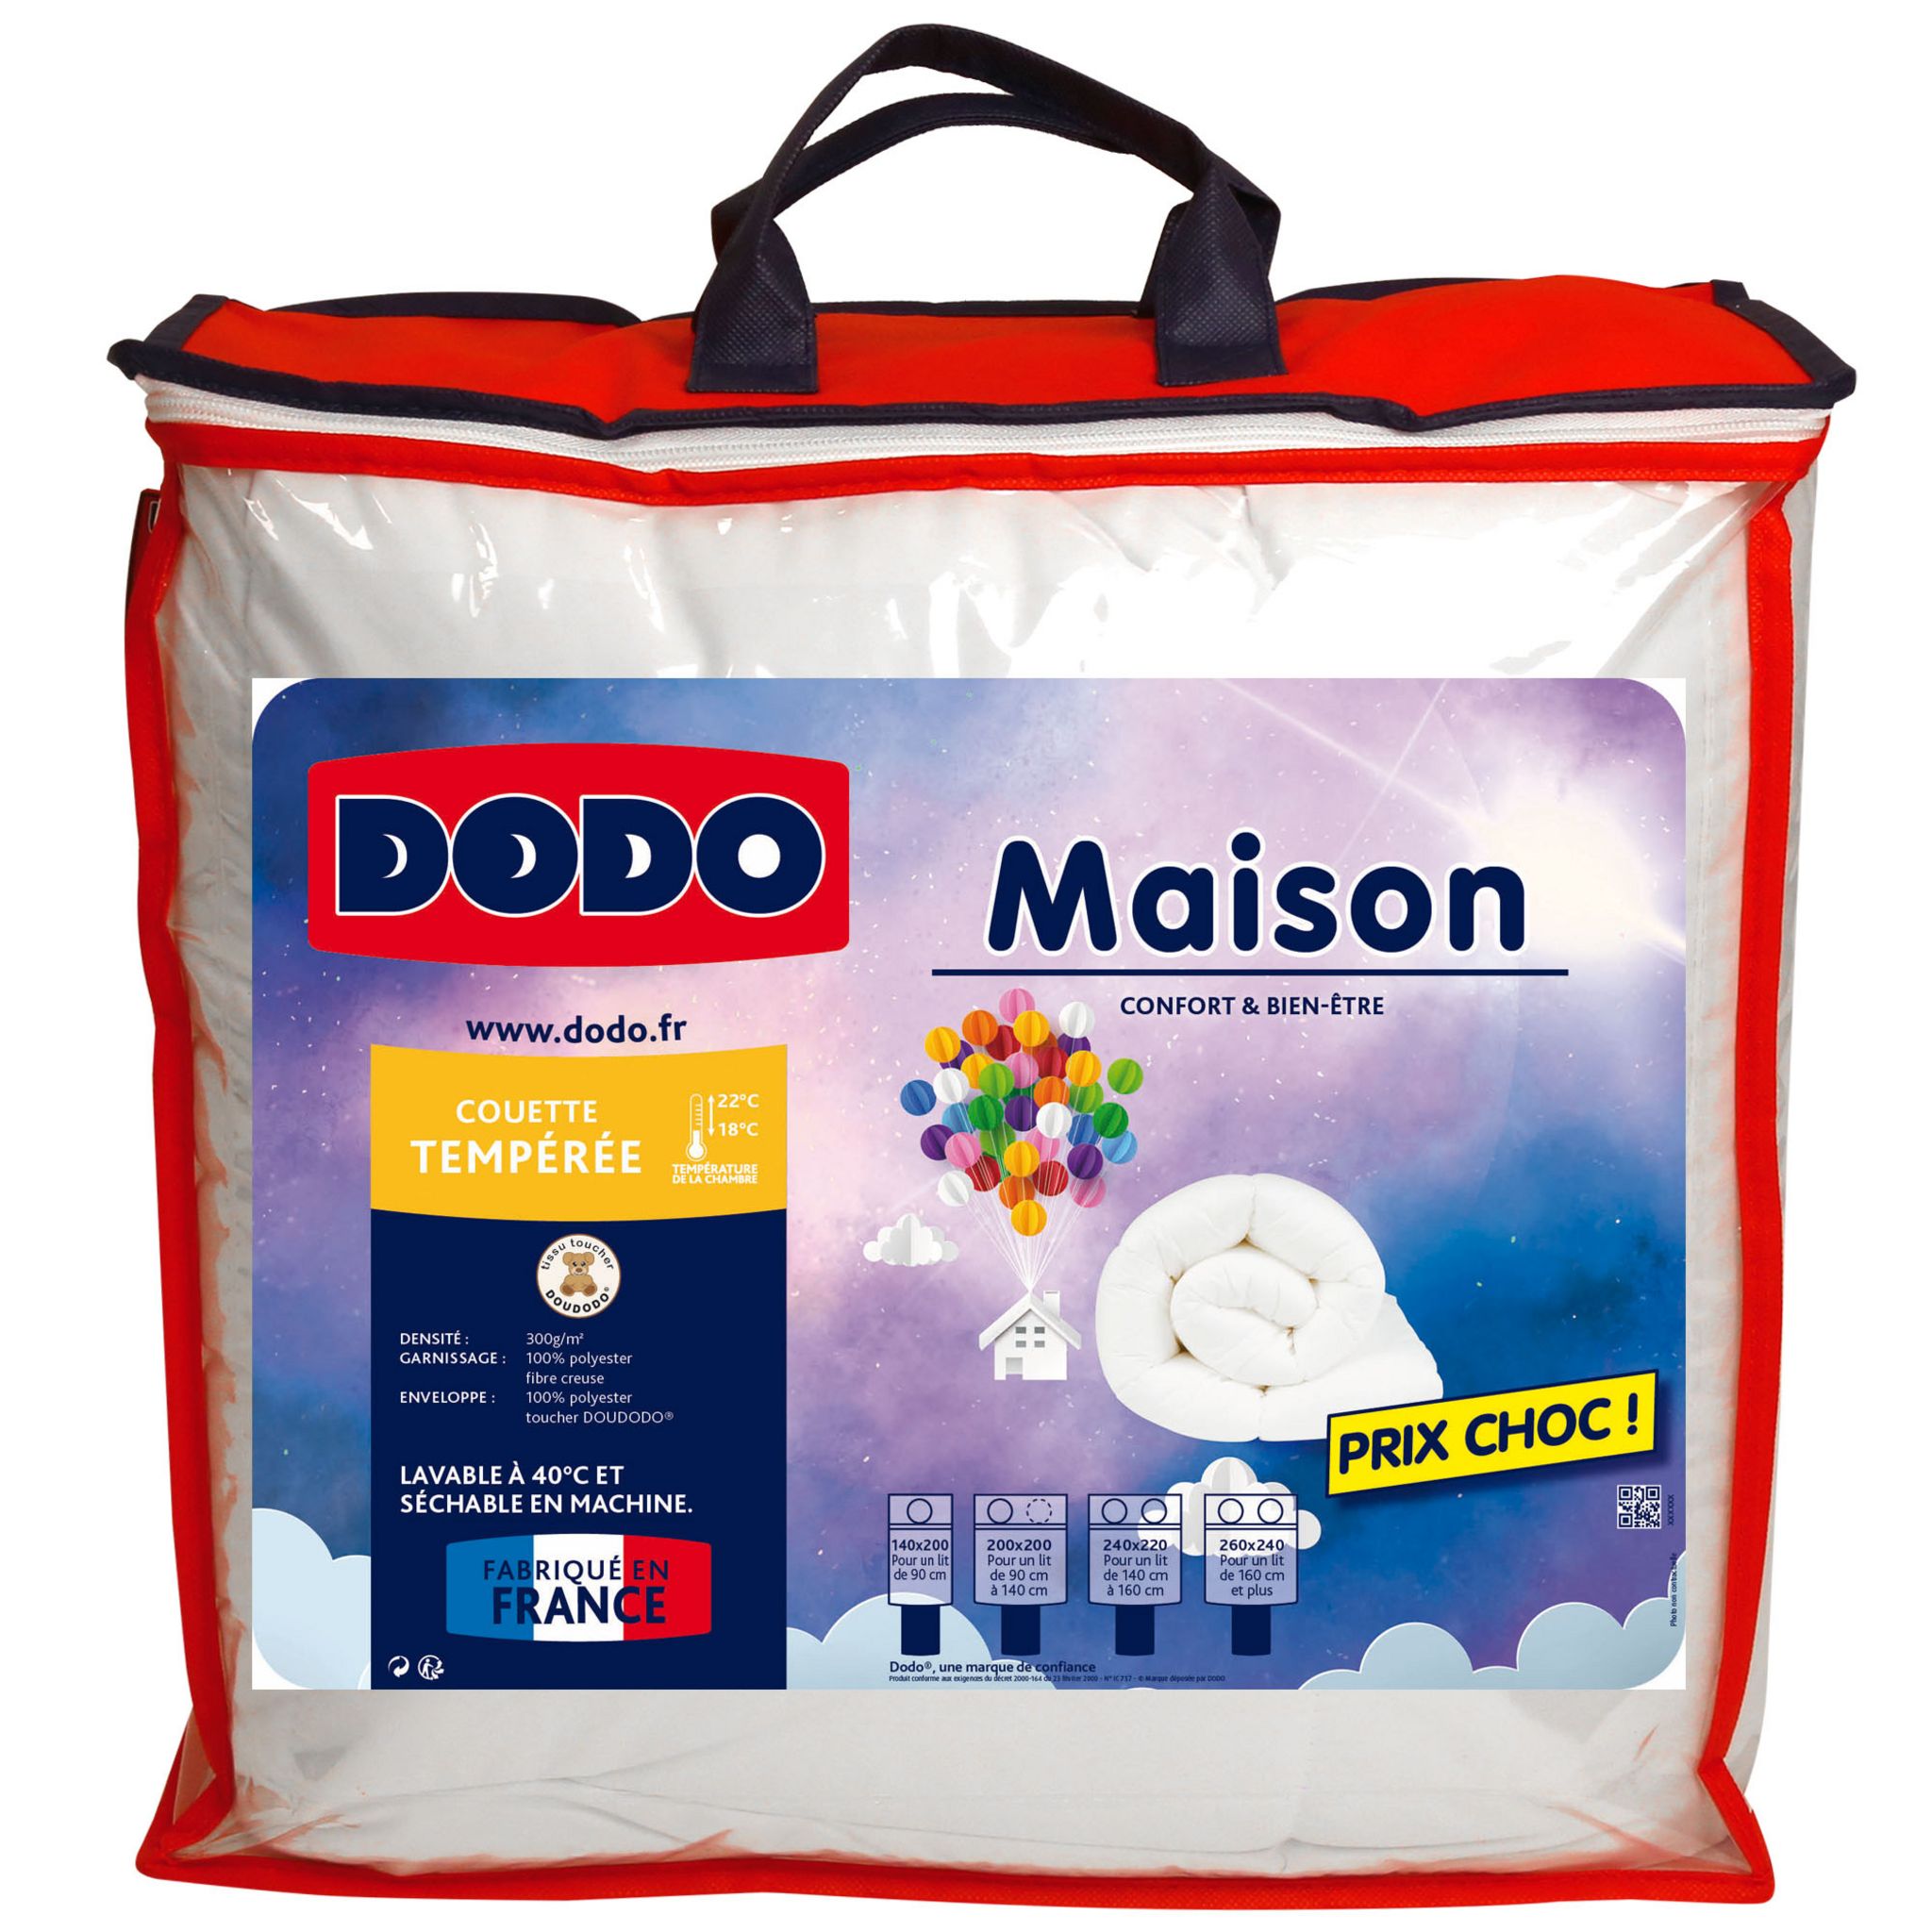 Couette DODO blanc tempérée 260x240 cm Lovely confort Neuve dans emballage  - P'tit Dodo